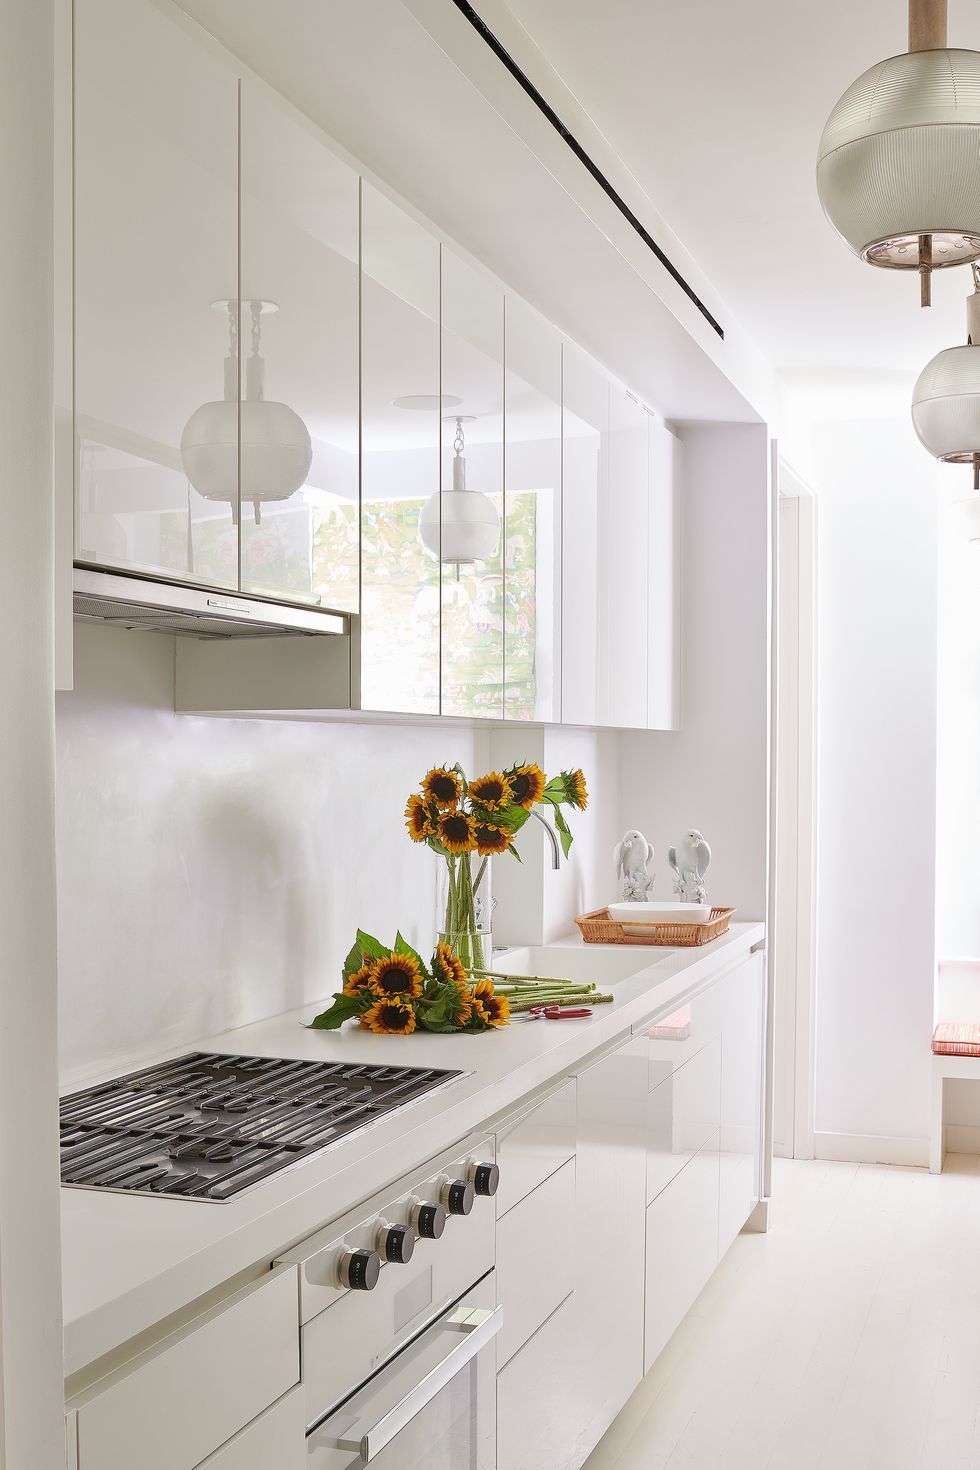 120 Modern small kitchen design ideas for small space home interior |  Interior Decor Designs - YouTube